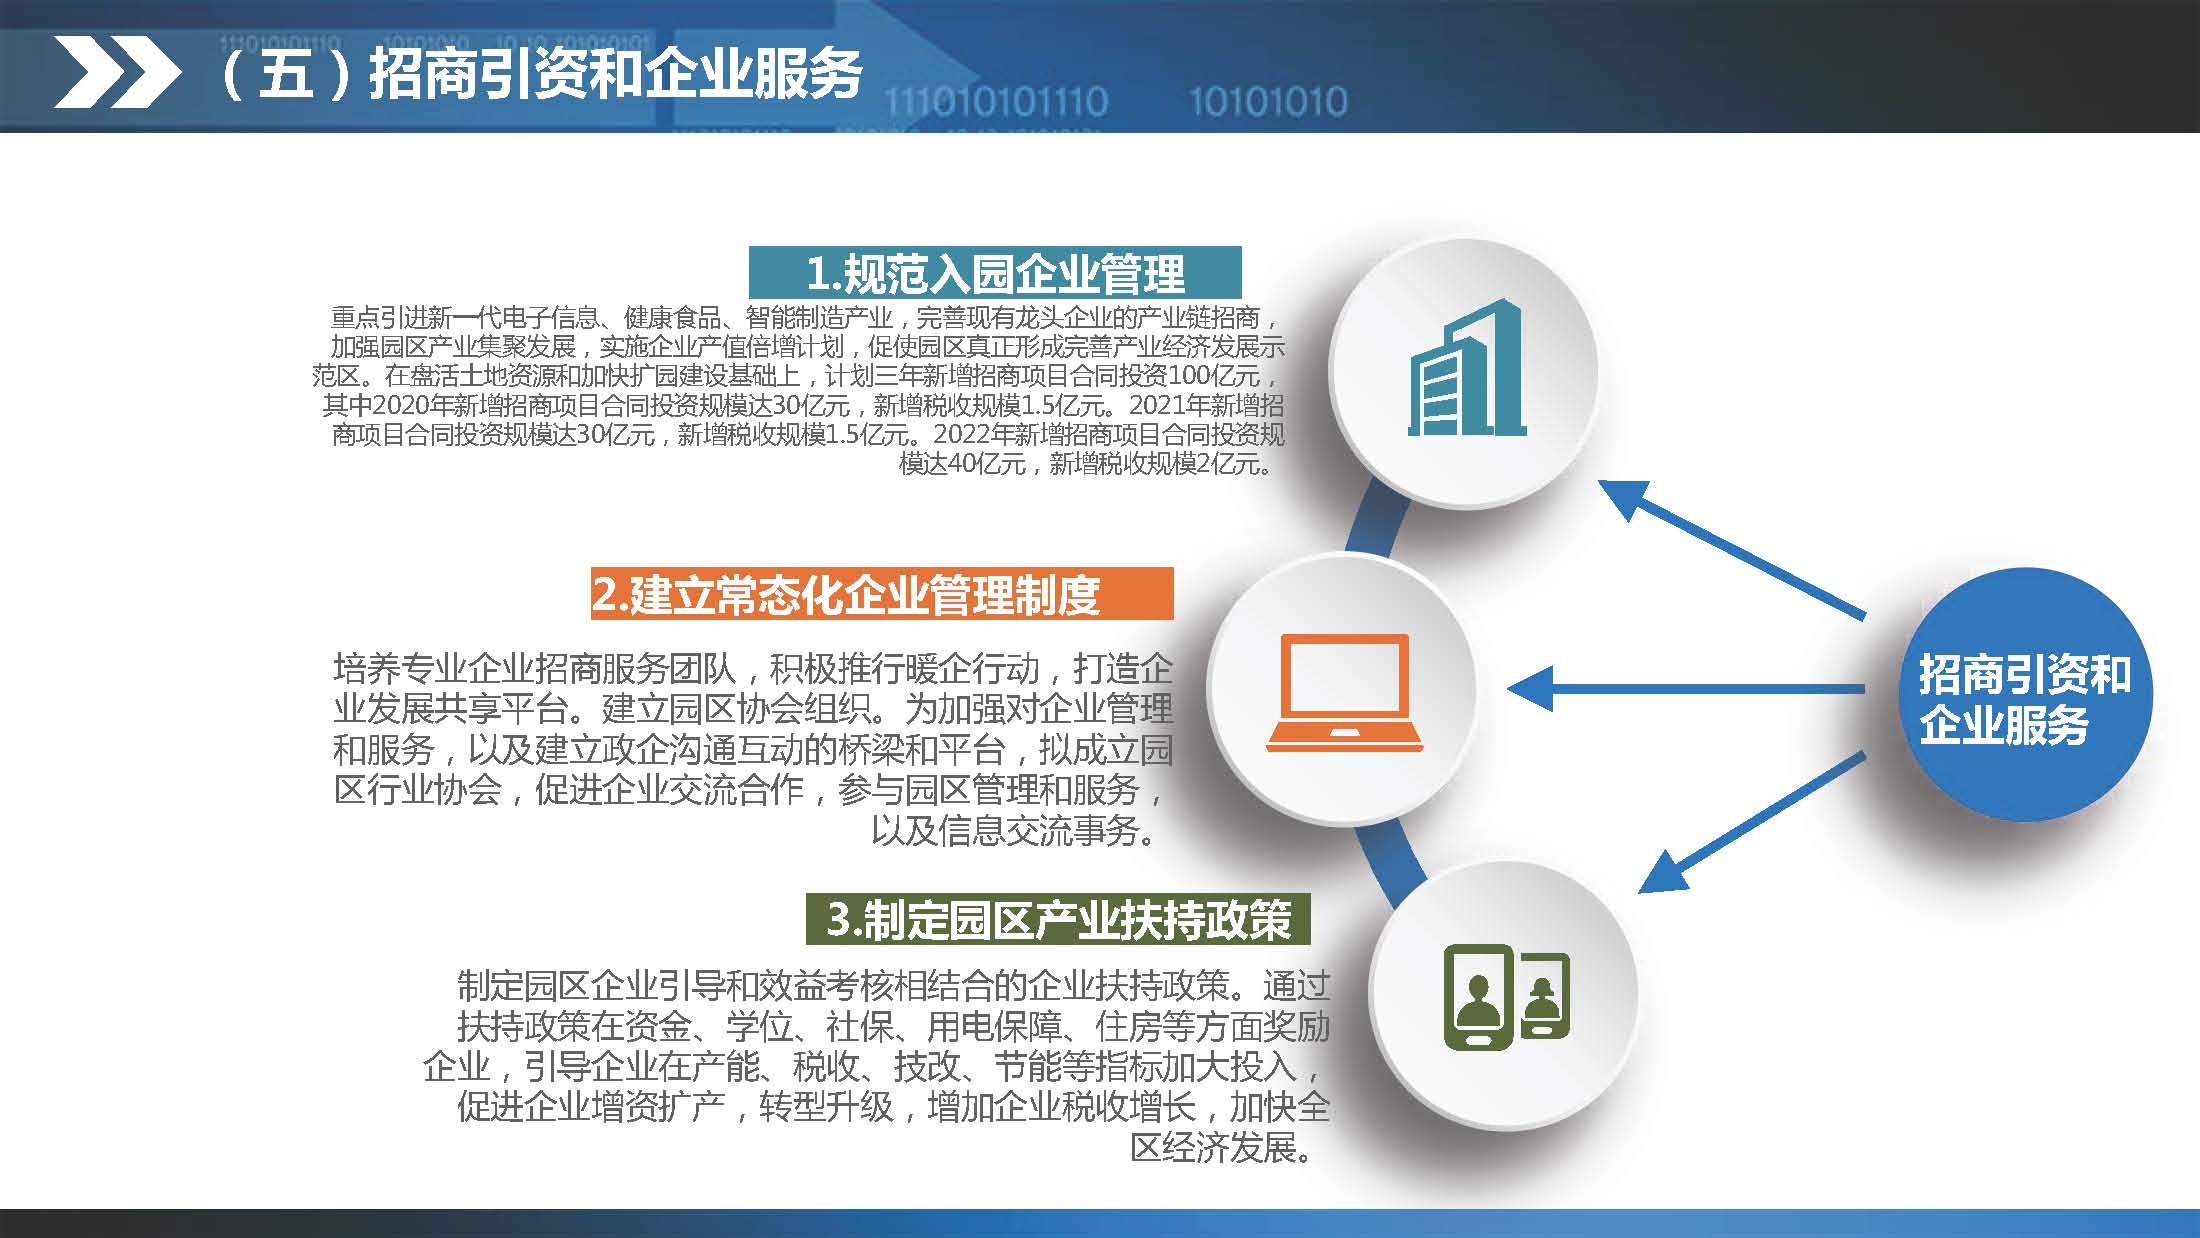 《江门蓬江产业转移工业园建设三年行动计划（2020-2022年）》图文解读_页面_15.jpg